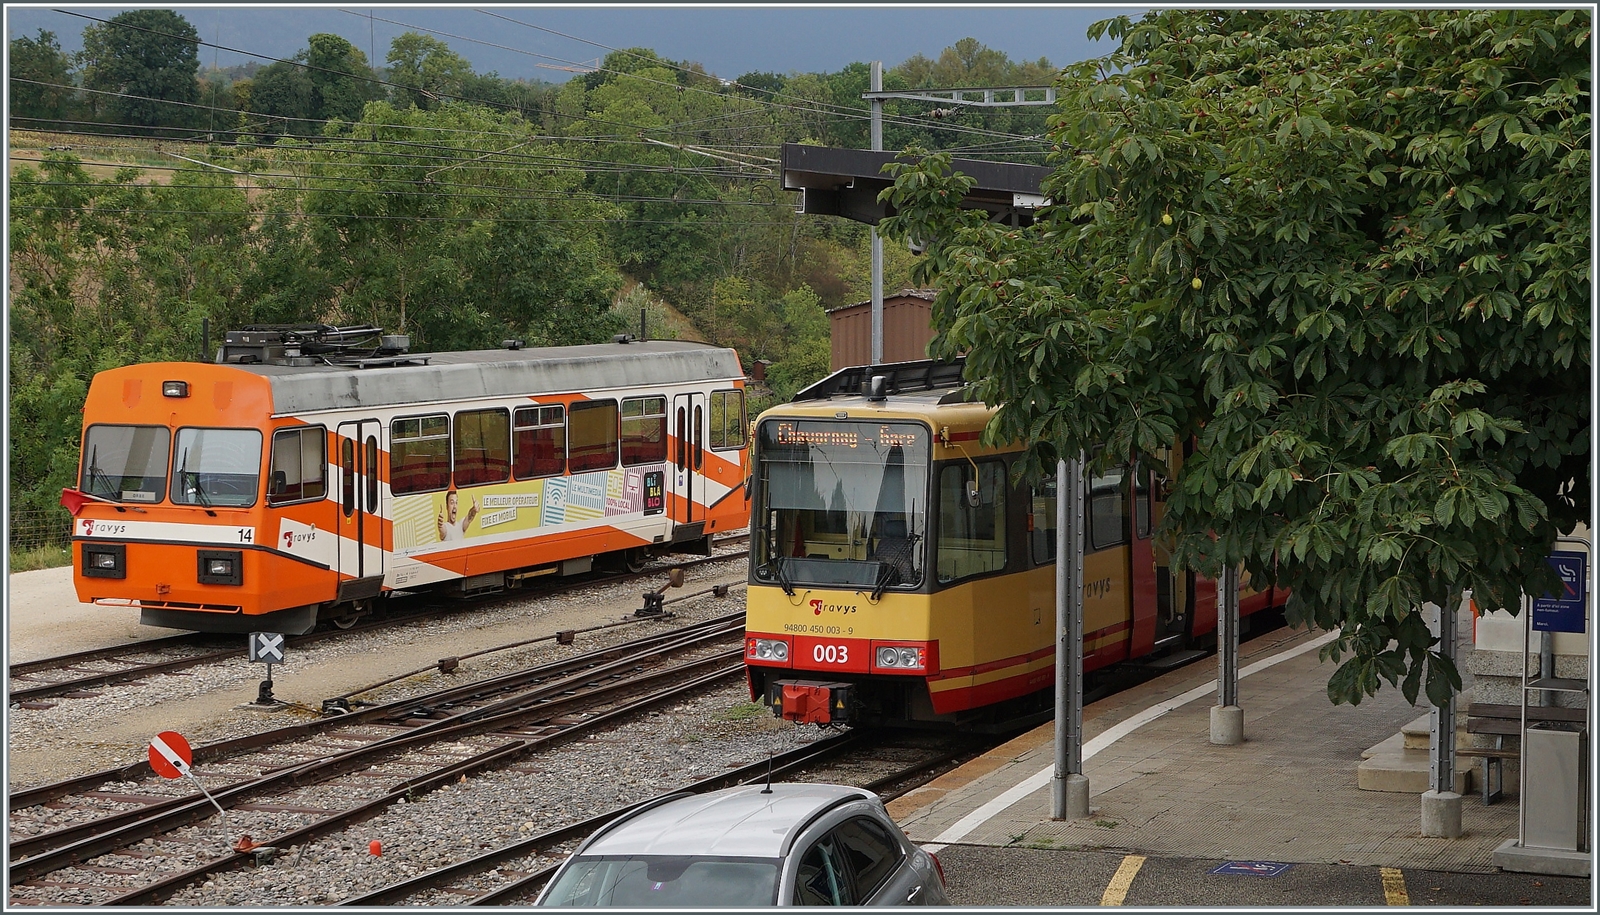 Bahnhof Orbe mit dem defekten Stadler Be 2/2 N° 14 (links im Bild) und dem dafür erworbenen Be 4/8 003 als Regionalzug nach Chavornay.

15. August 2022